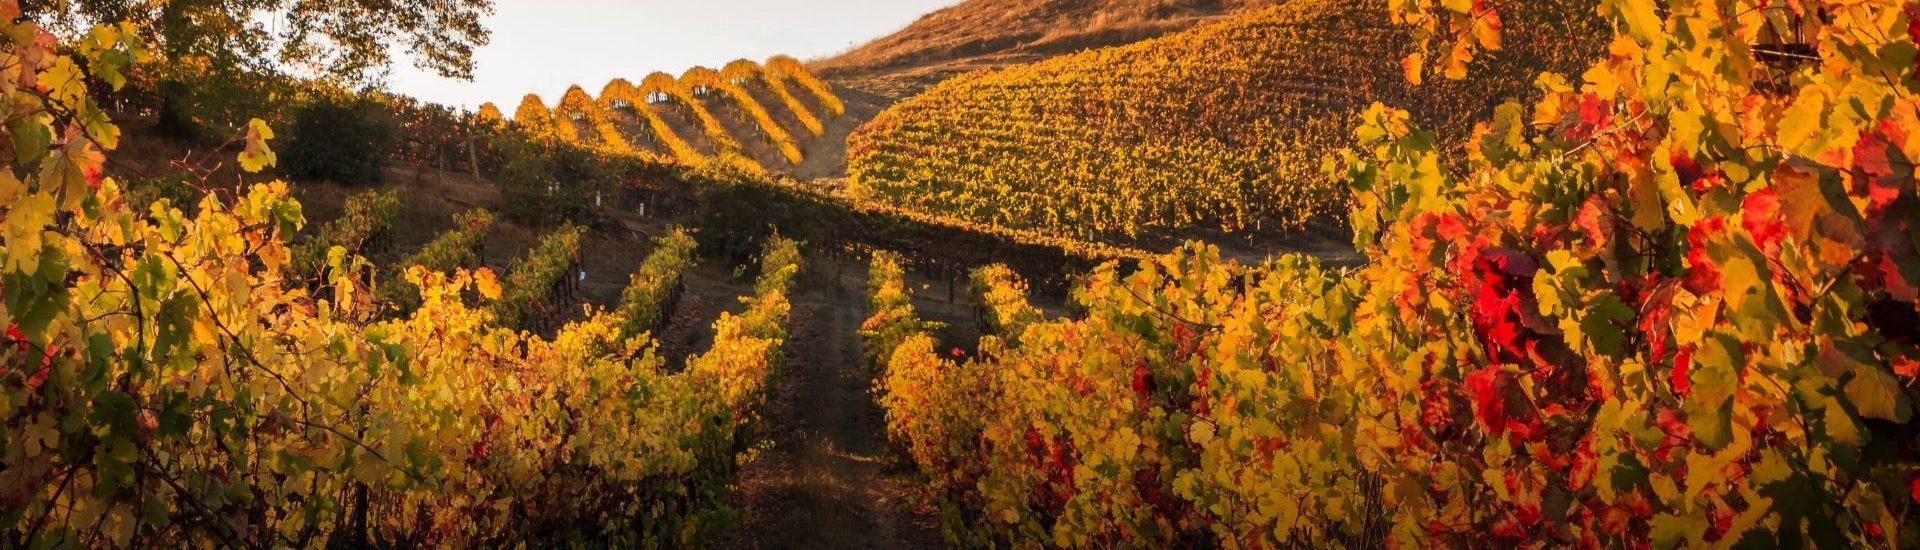 beautiful italian vineyard at dusk